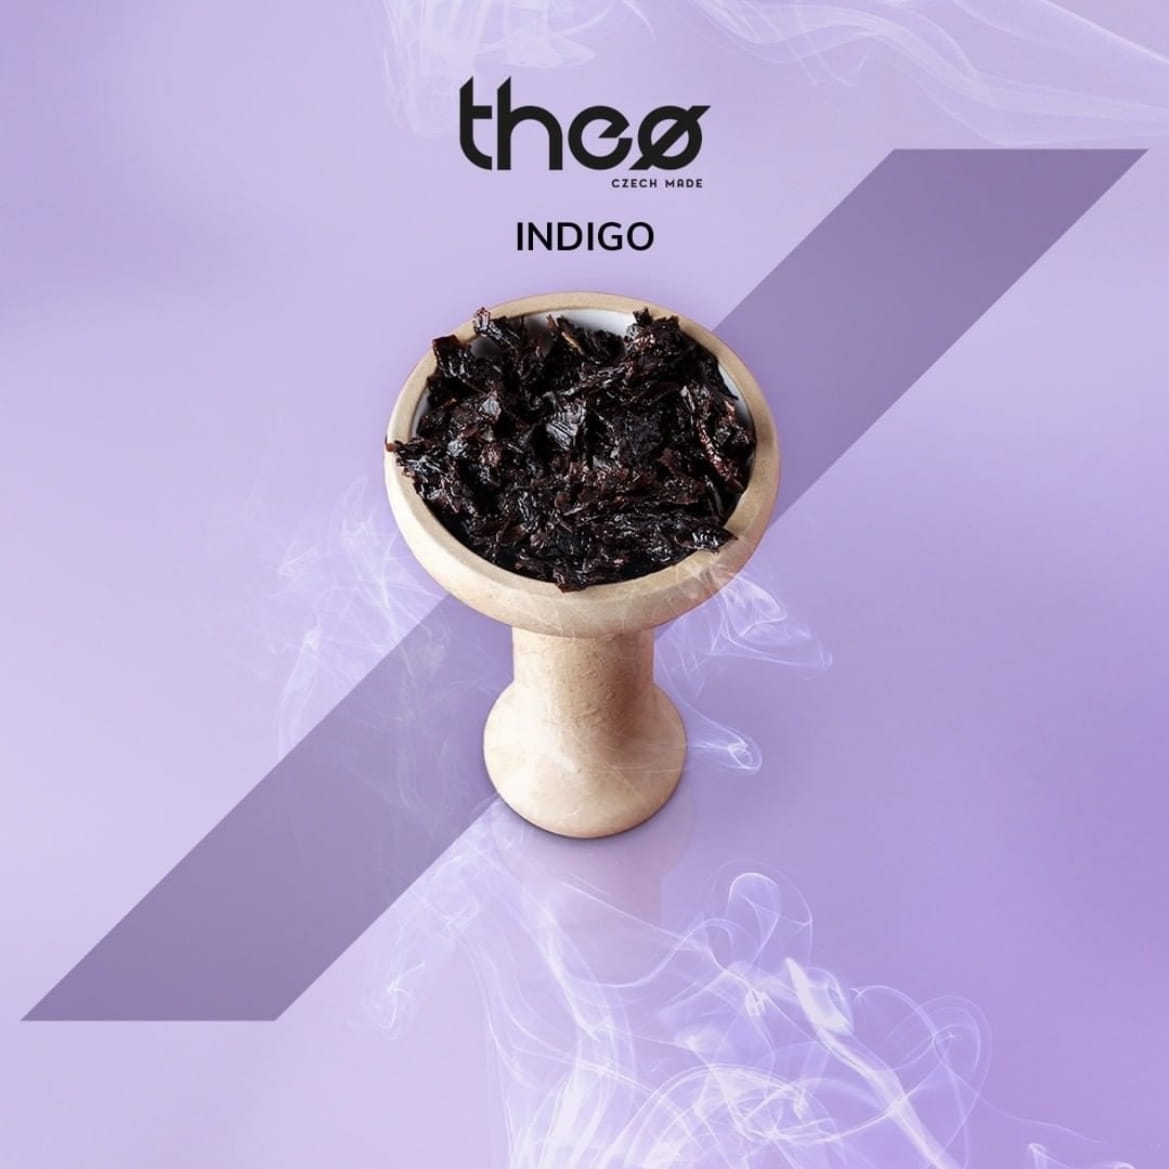 Theo - Indigo 20g Probierpaket